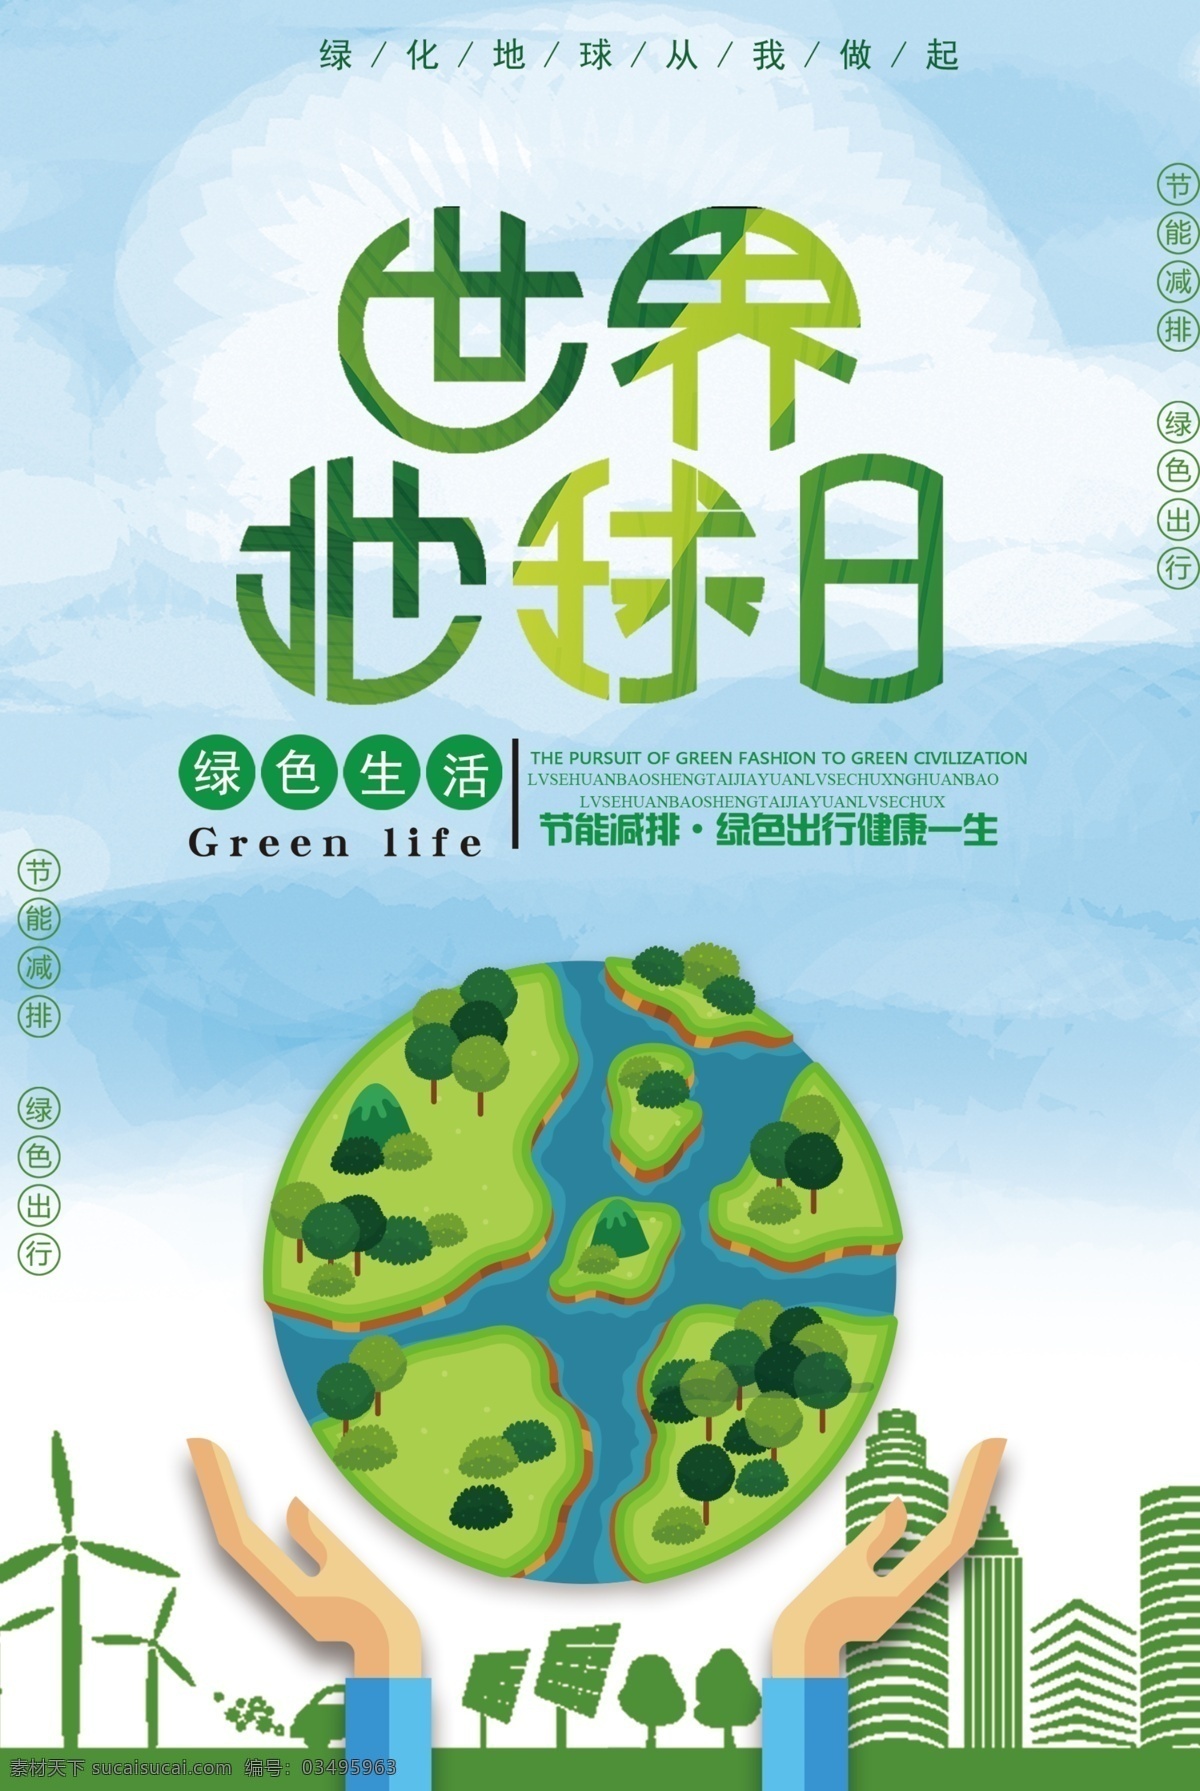 绿色 大气 世界 地球日 公益 海报 公益海报 环保 简约 节约用水 免费海报 纯色 保护环境 植树造林 保护地球 植树节 节能 低碳 地球 环保日 保护环境海报 世界地球日 绿色大气 绿色世界